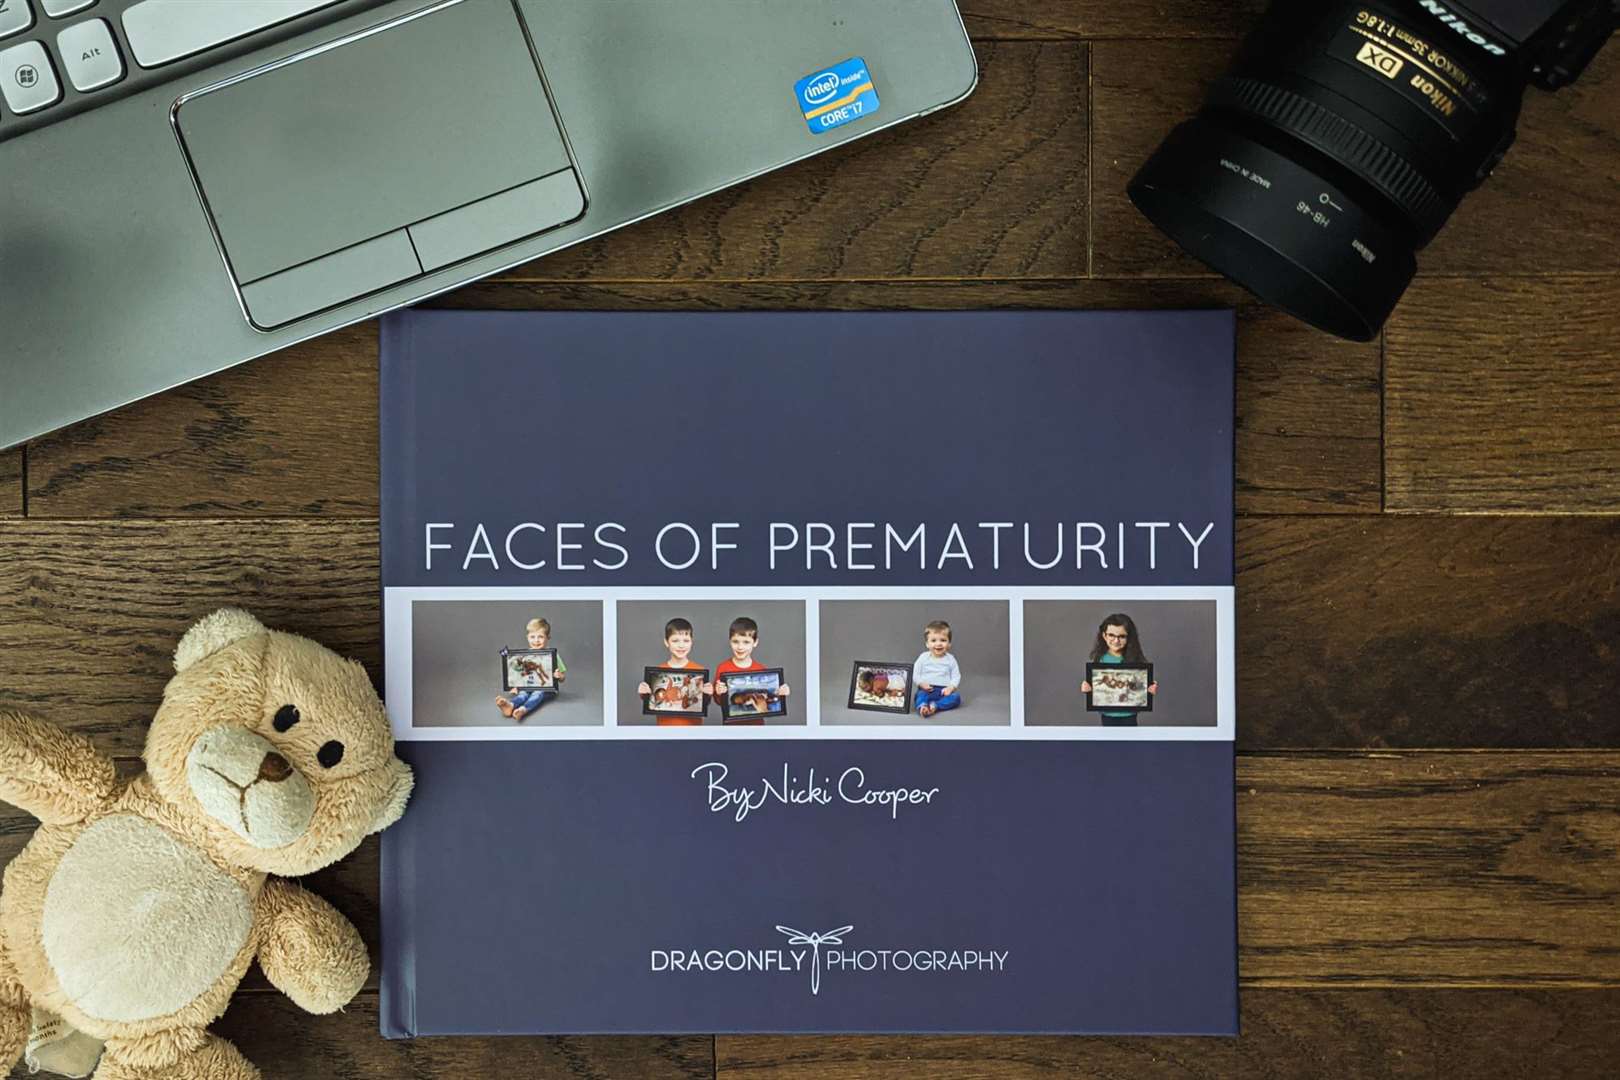 Nicki Cooper's book Faces of Prematurity